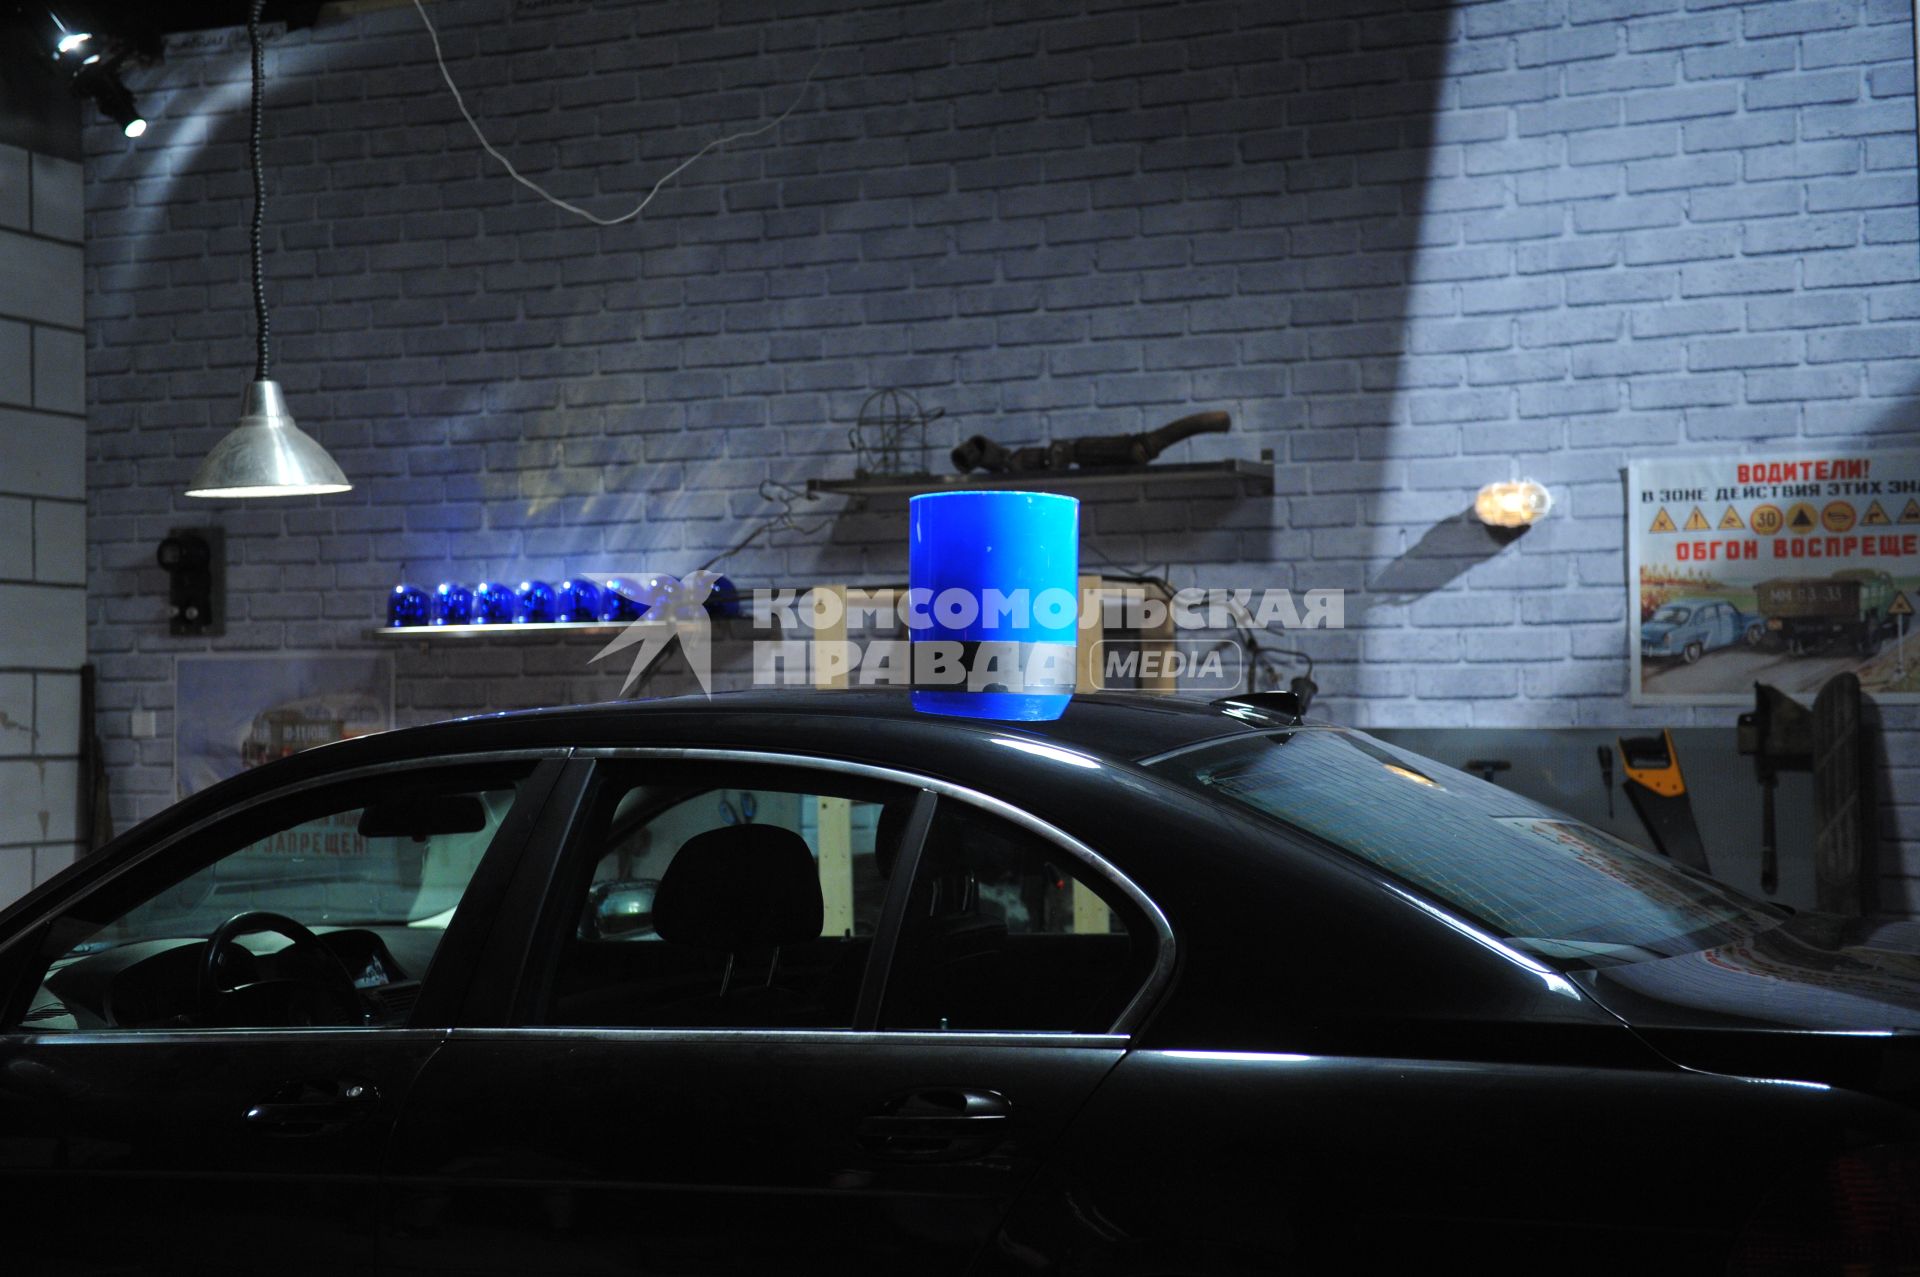 Съемки телепередачи БОЛЬШАЯ РАЗНИЦА. На снимке: гараж, машина со спецсигналом на крыше. Синее ведерко. Проблесковый маячок 28 июля 2011 года.